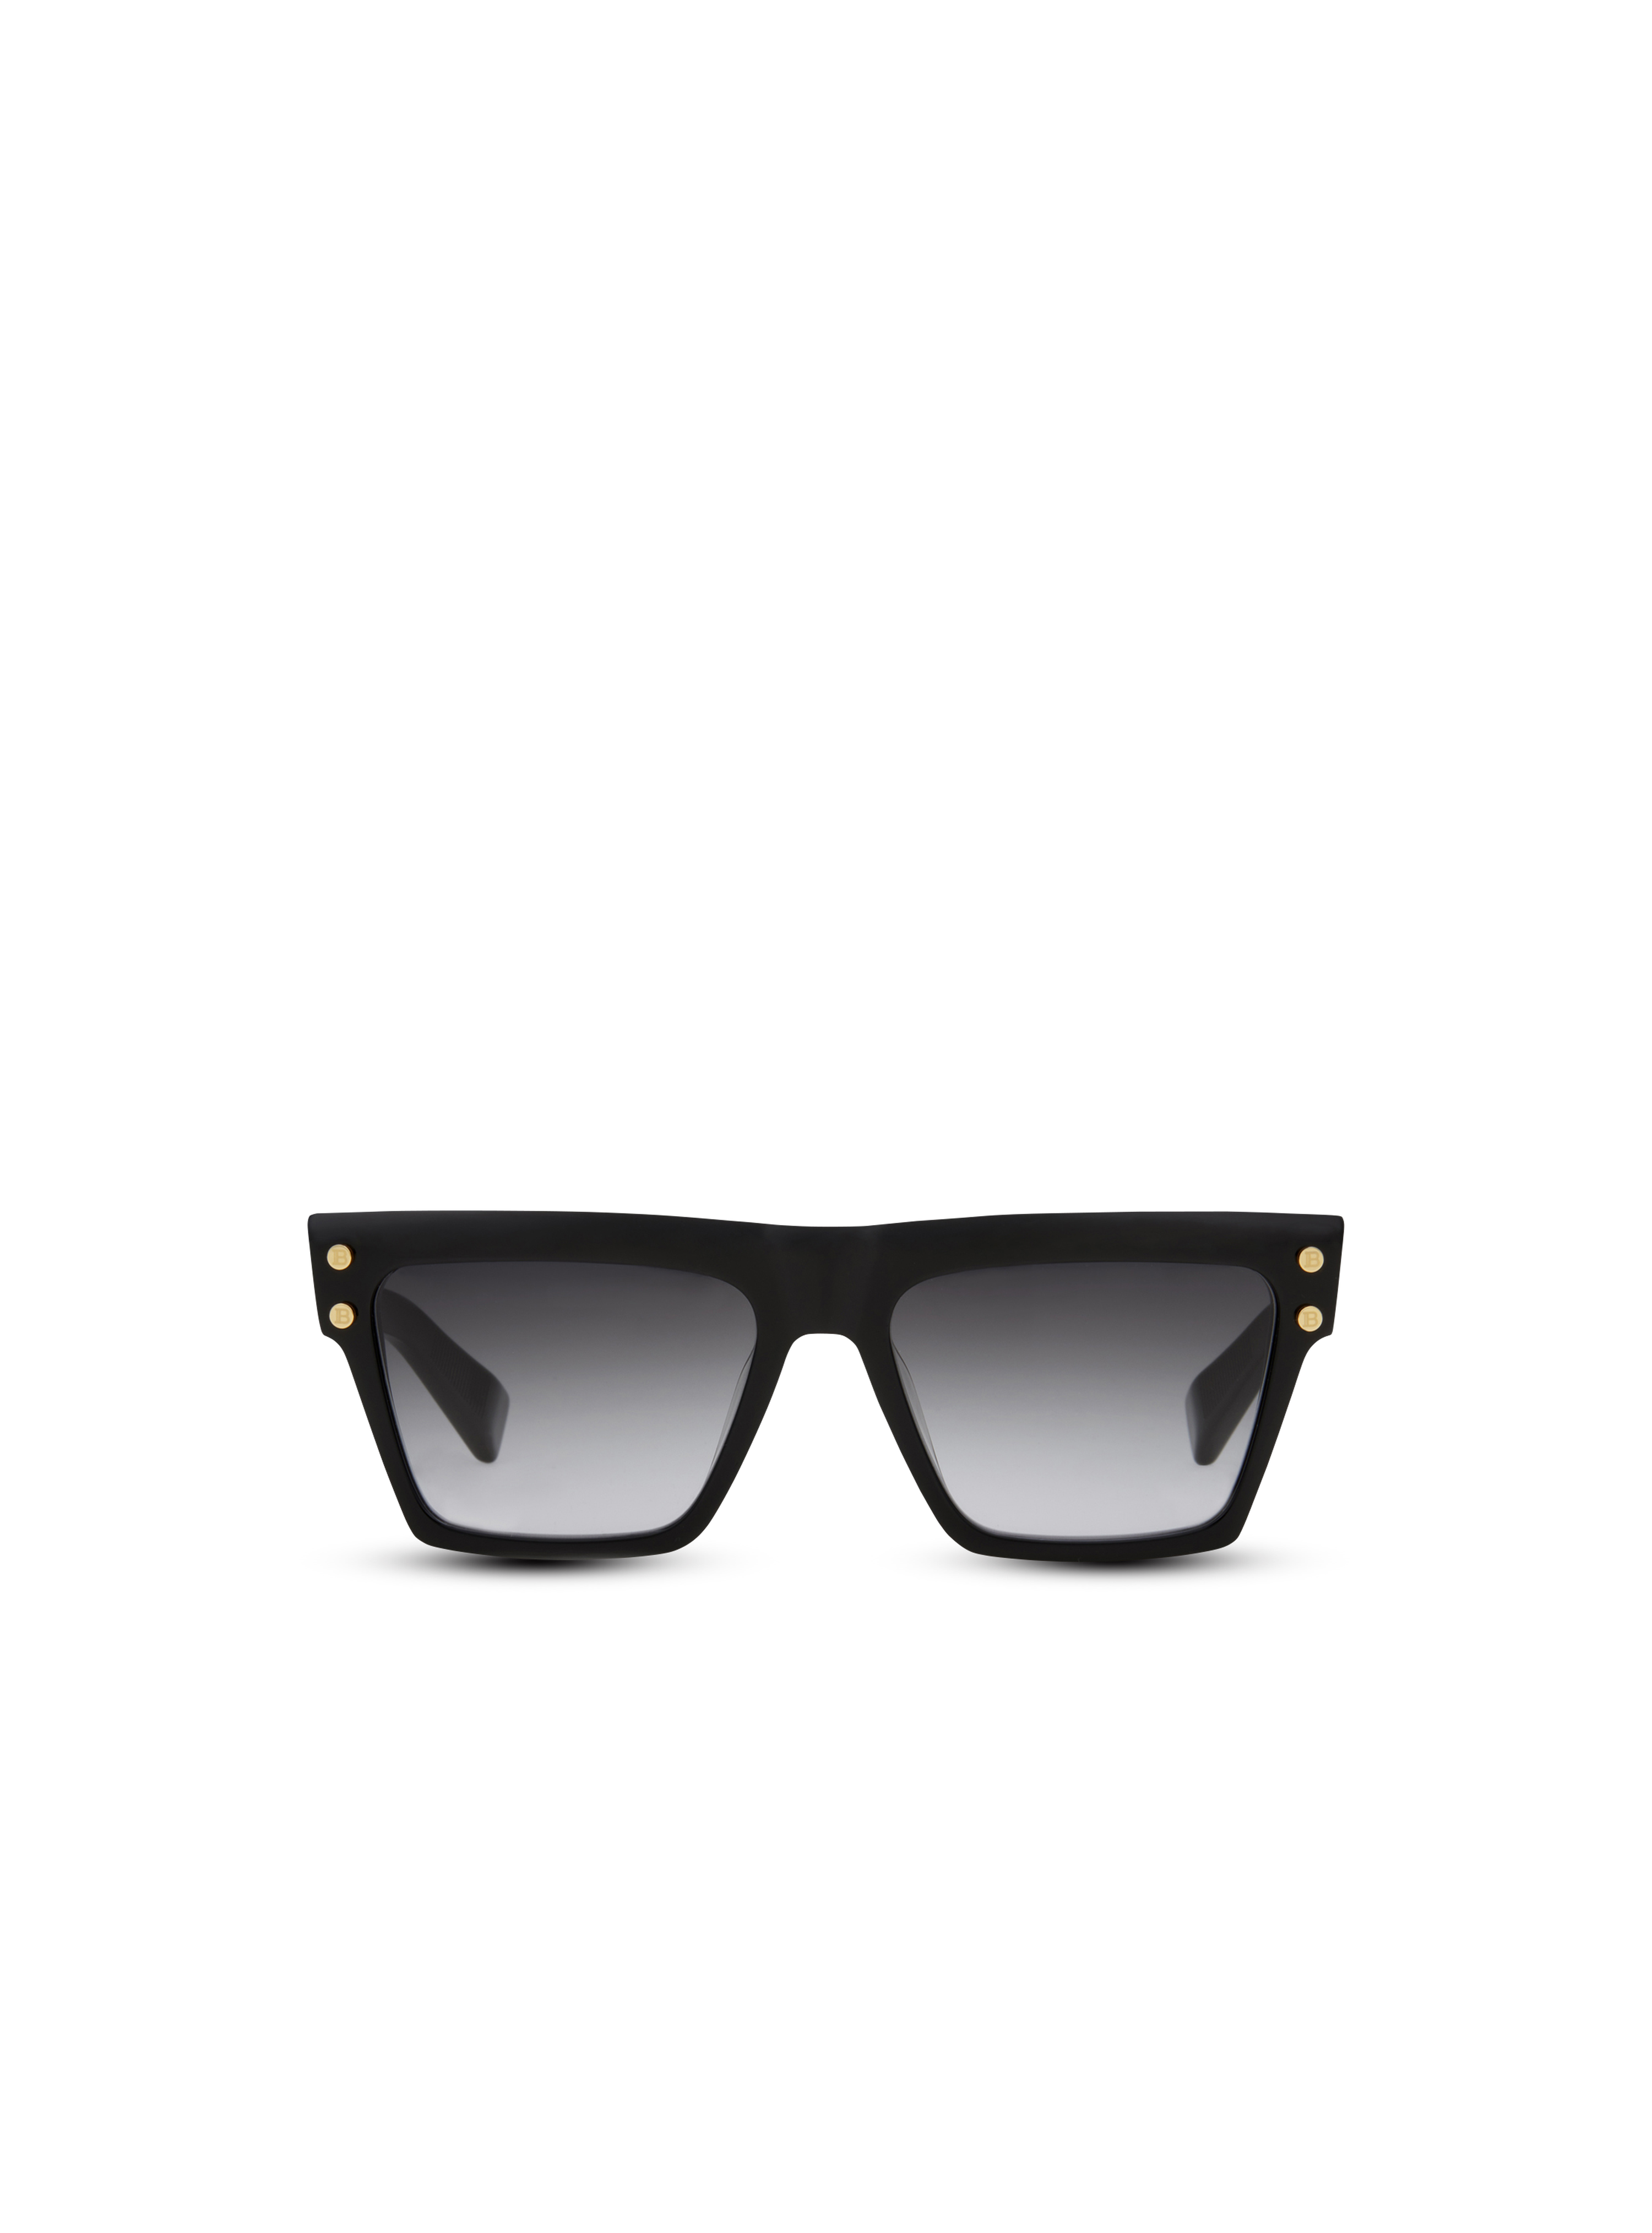 B-V sunglasses, black